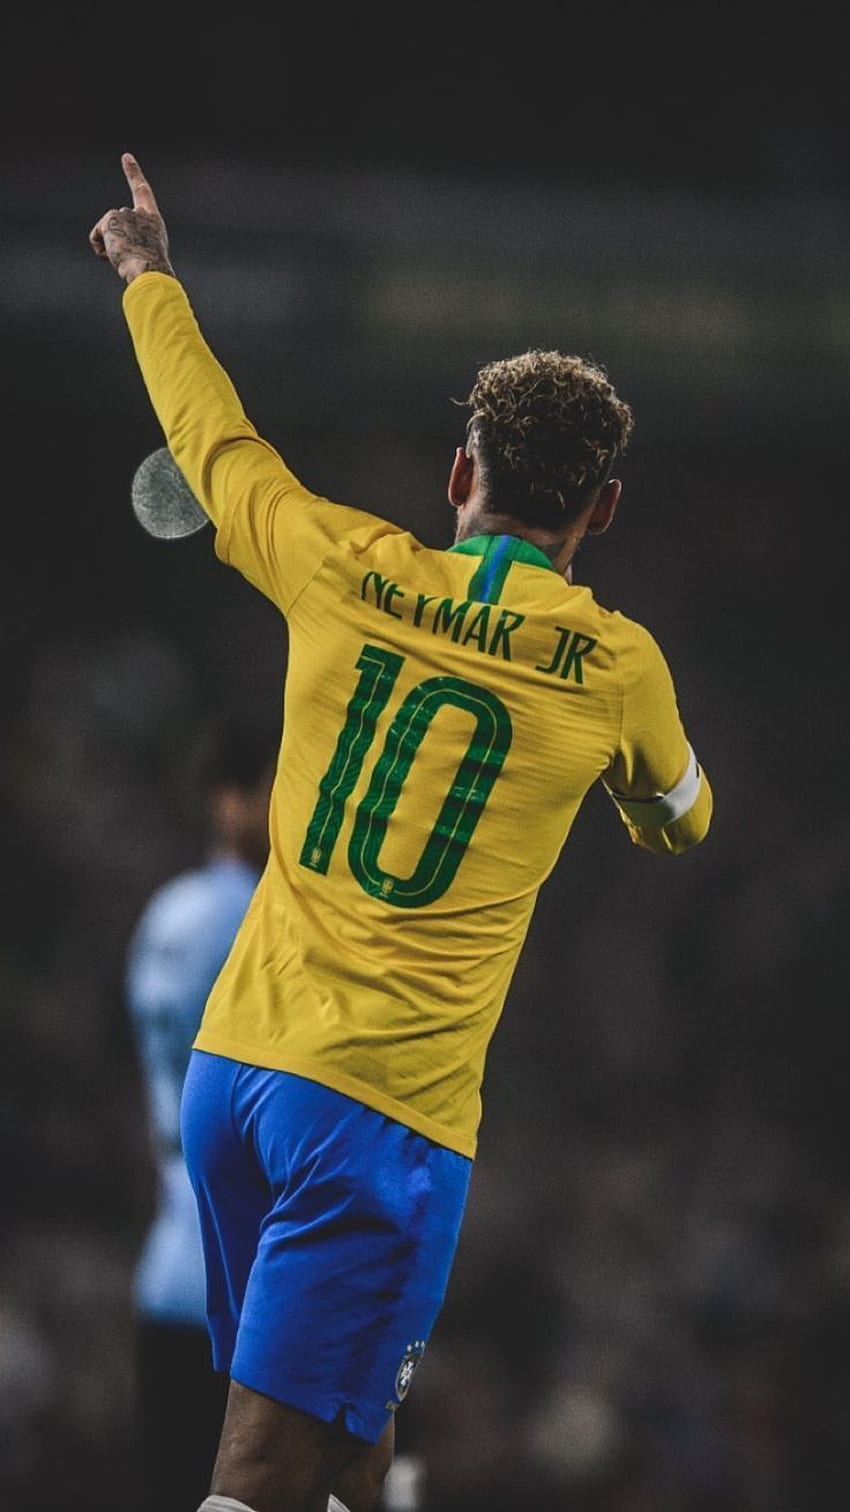 Bạn muốn xem những hình ảnh tuyệt đẹp về Neymar, Neymar football và Neymar Jr Brazil trên điện thoại của mình? Chất lượng HD đầy màu sắc sẽ giúp bạn trải nghiệm cảm giác như đang ở trên sân cỏ và xem những trận đấu đỉnh cao. Cùng khám phá sự nghiệt ngã và tài năng của Neymar.